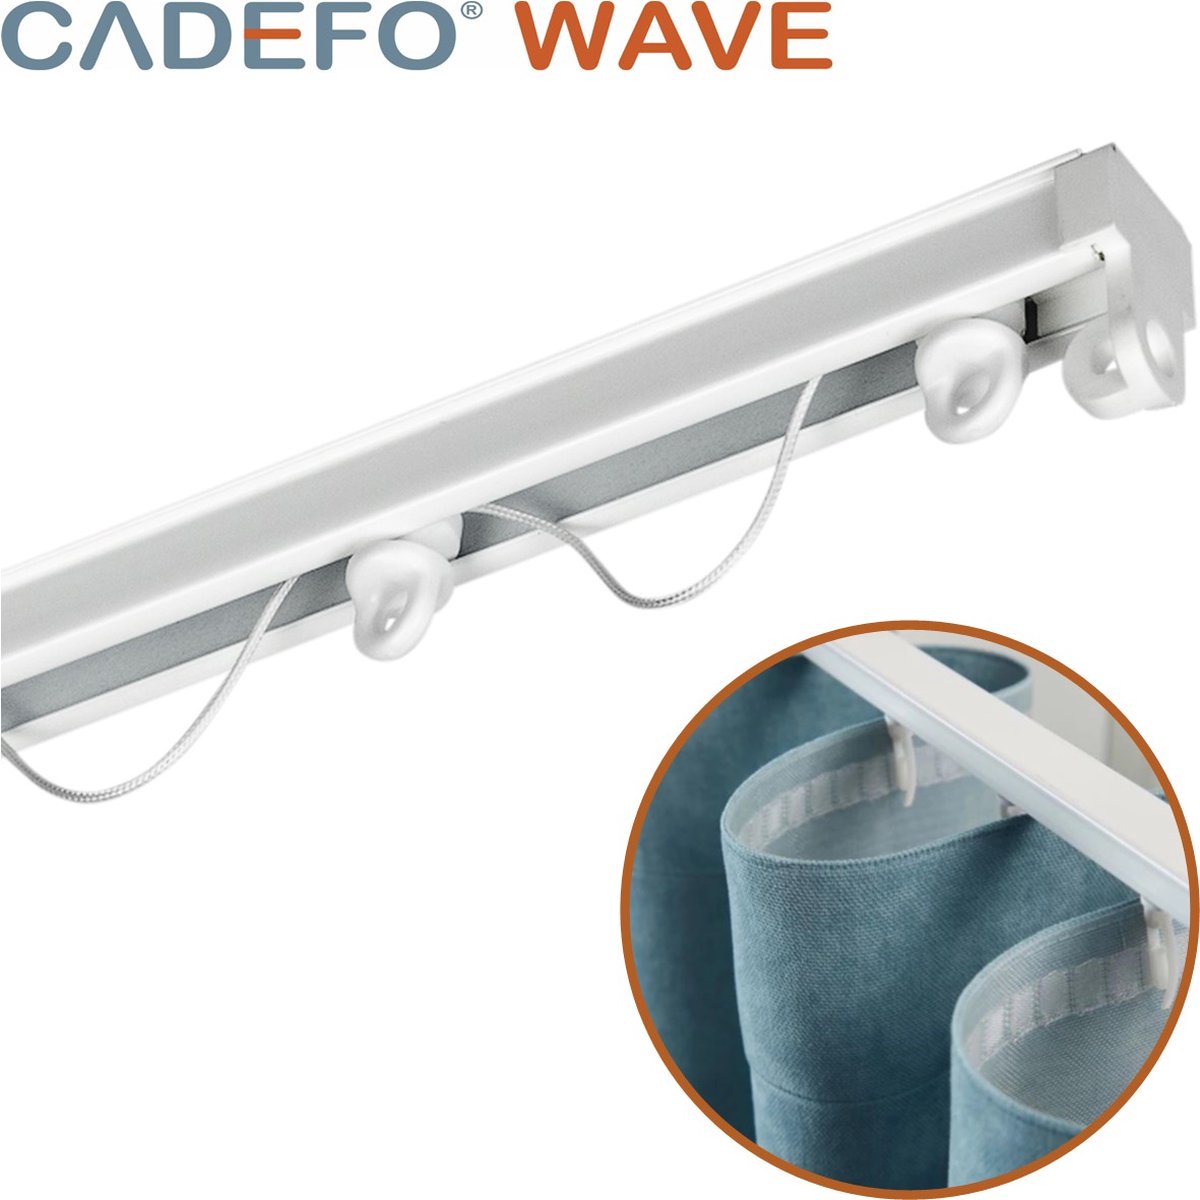 CADEFO WAVE (301 - 350 cm) Gordijnrails - Compleet op maat! - UIT 1 STUK - Leverbaar tot 6 meter - Plafondbevestiging - Lengte 337 cm